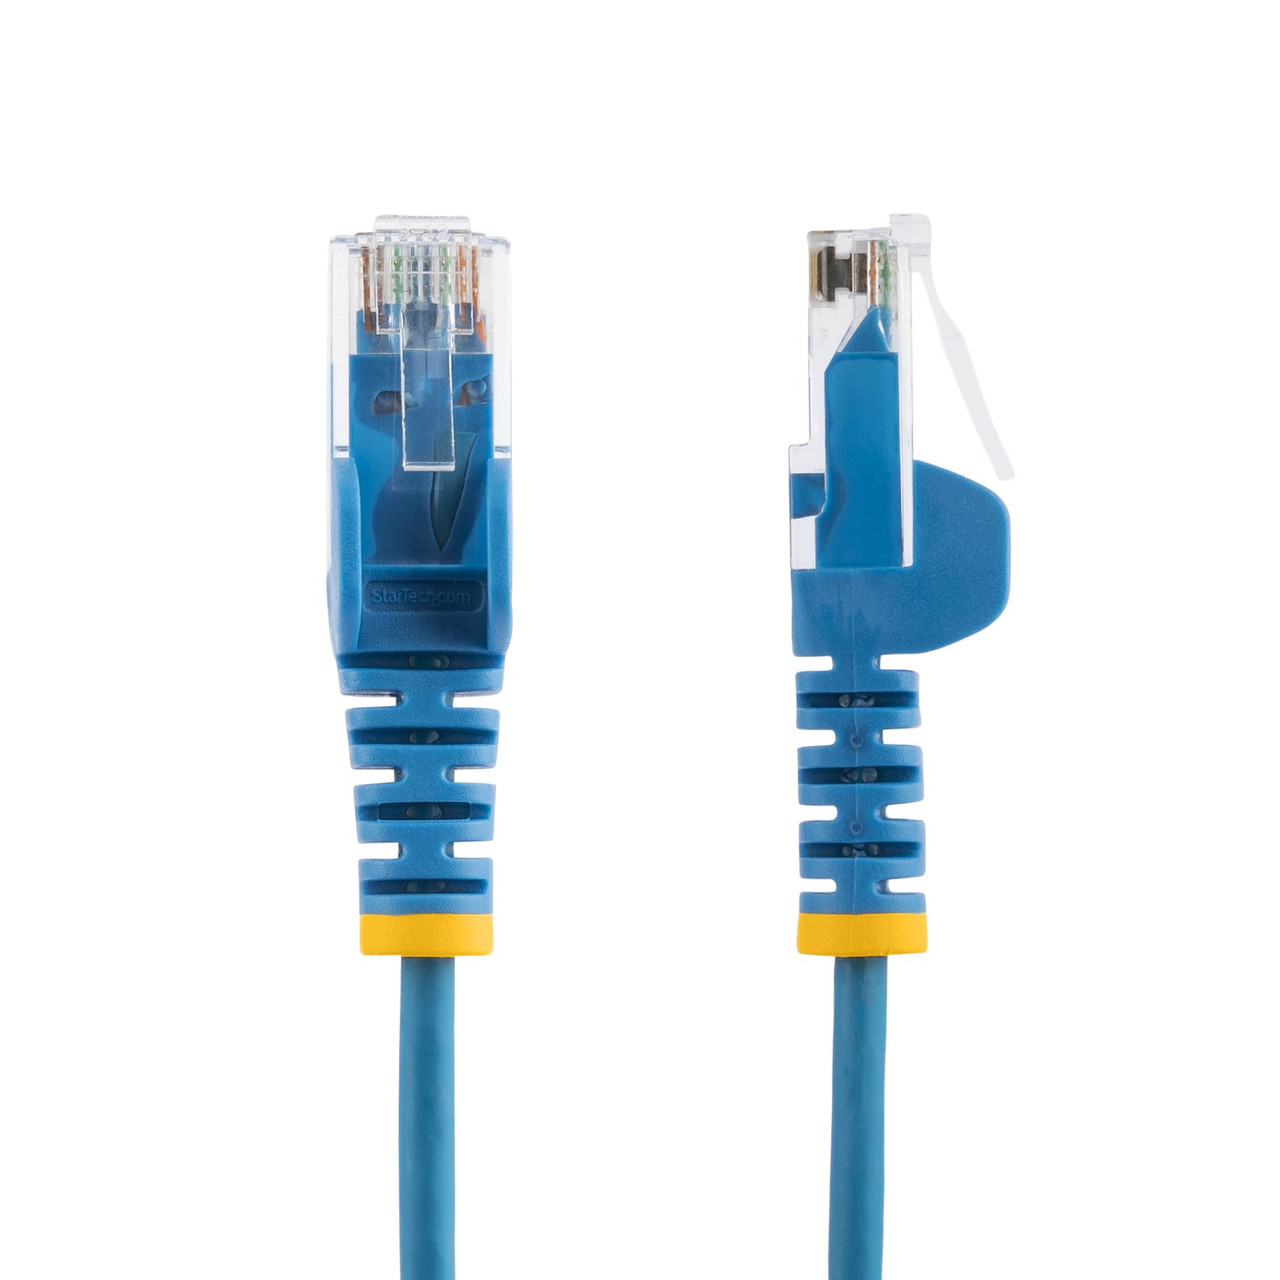 StarTech.com 2.5 m CAT6 Cable - Slim - Snagless RJ45 Connectors - Blue